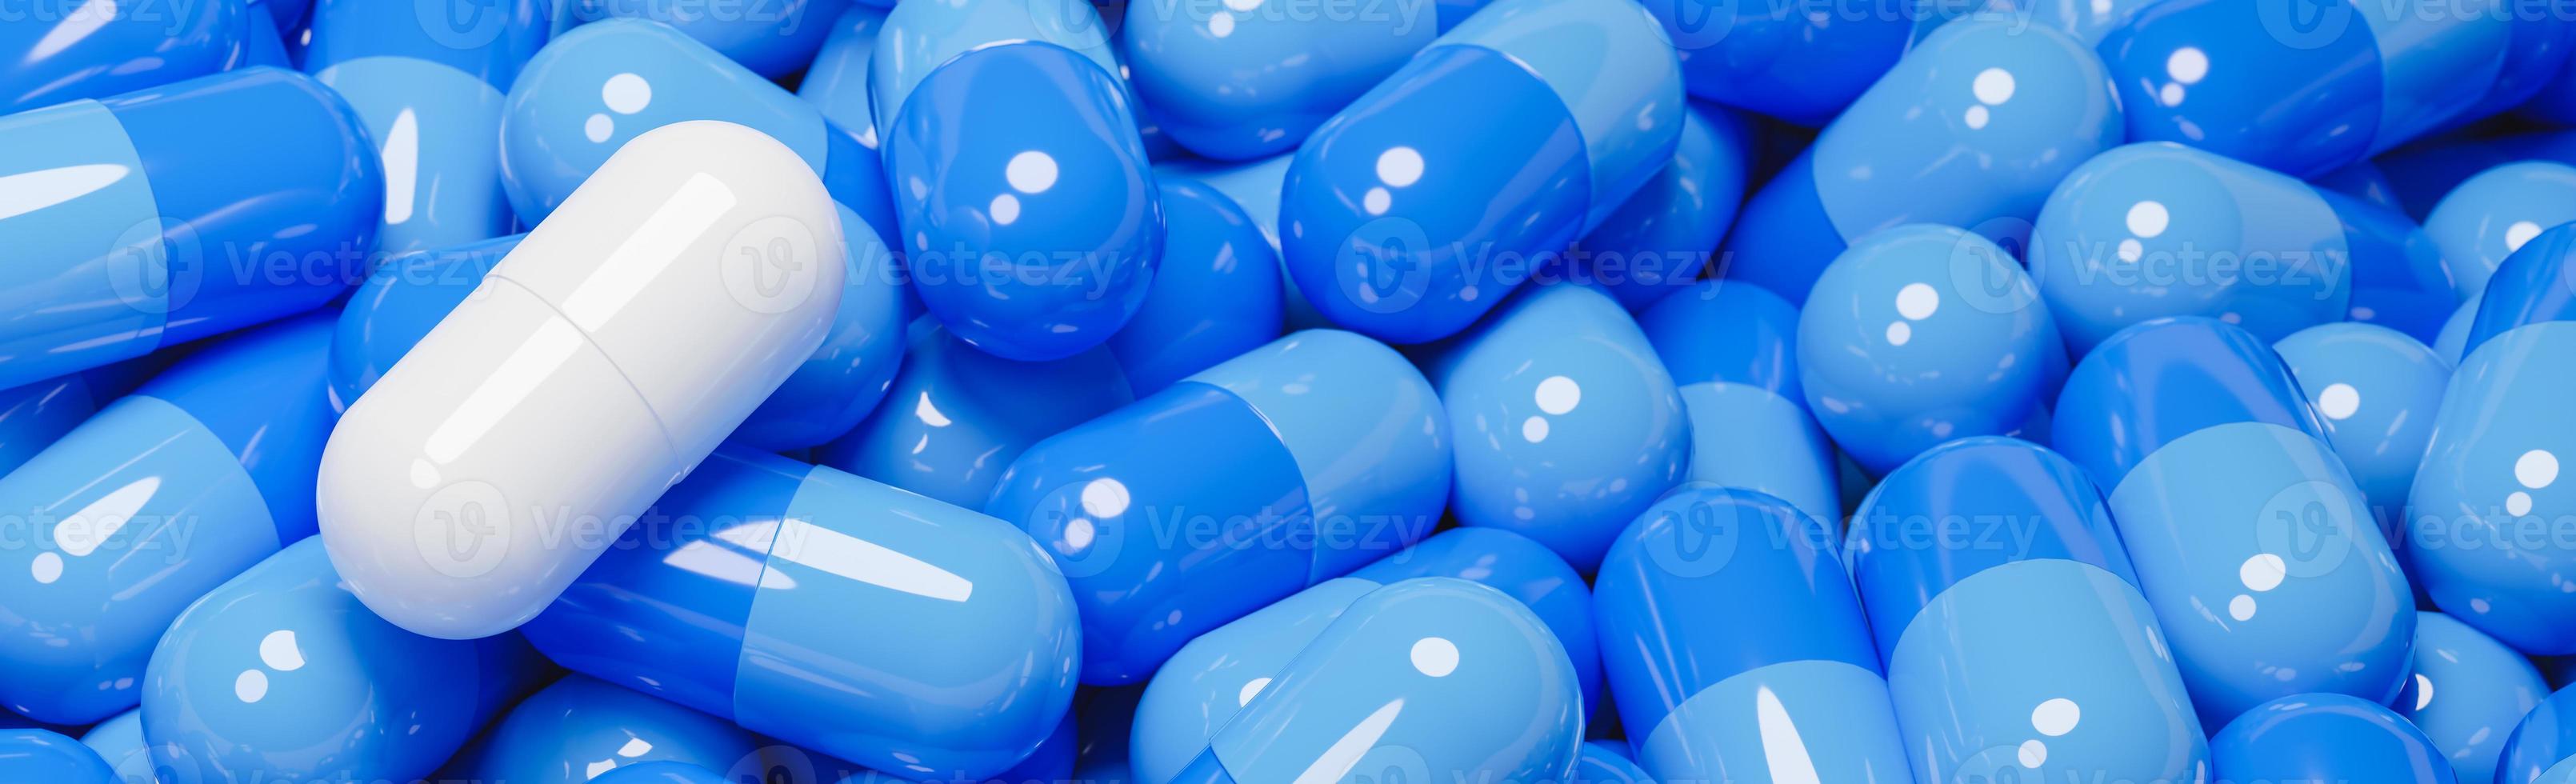 gros plan sur une capsule de pilule blanche dans de nombreuses capsules de pilules bleues. concept de médecine et de produits pharmaceutiques spécialisés., modèle 3d et illustration. photo